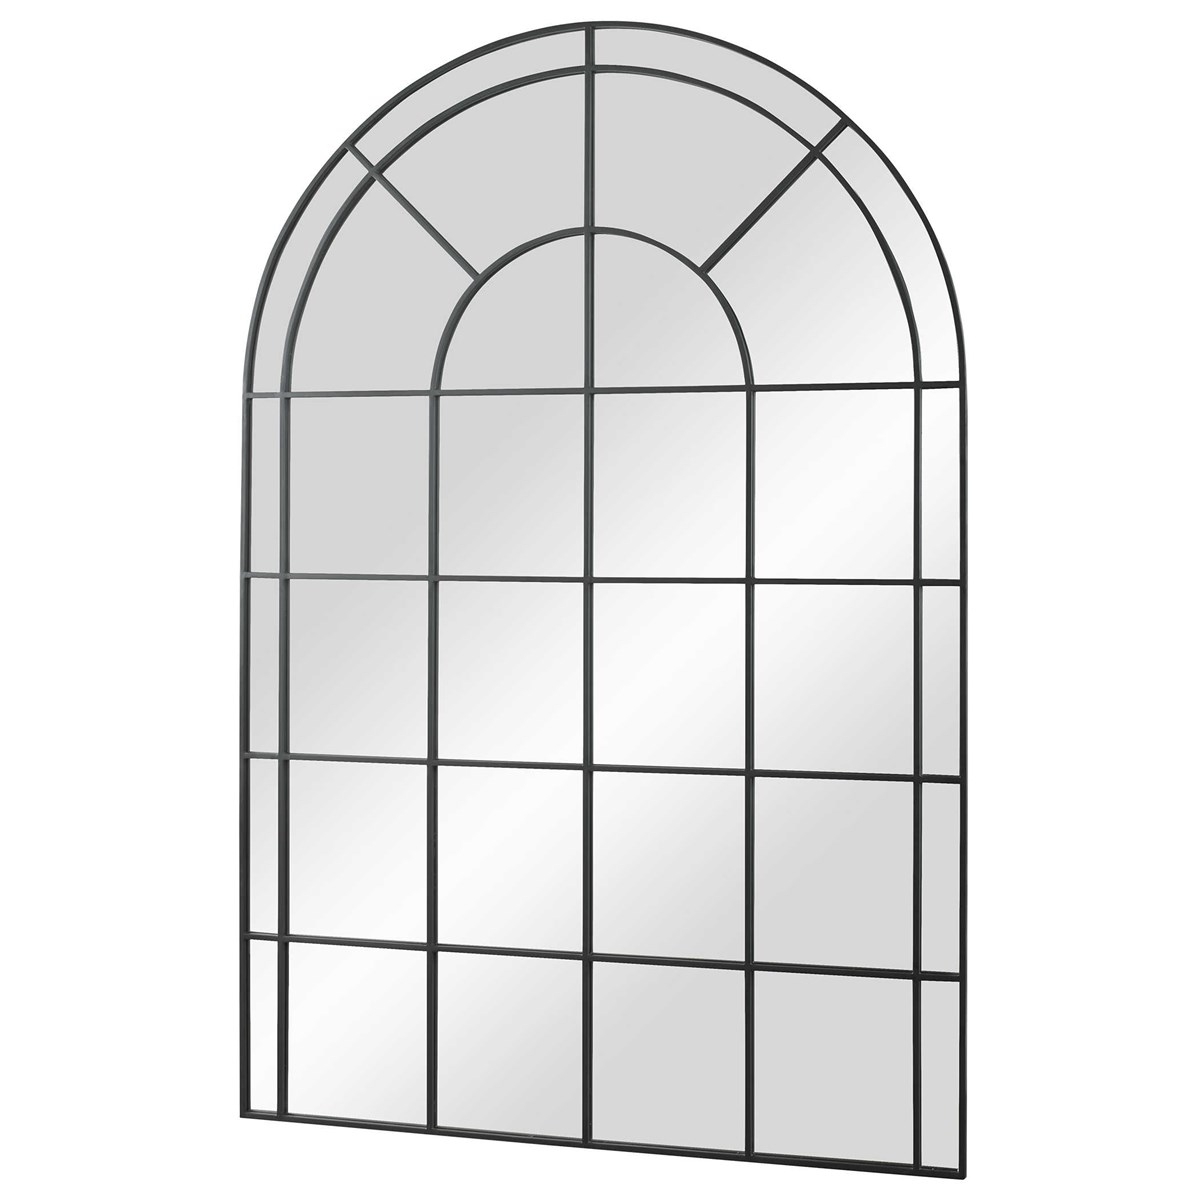 Grantola Arch Mirror, Black - Image 2